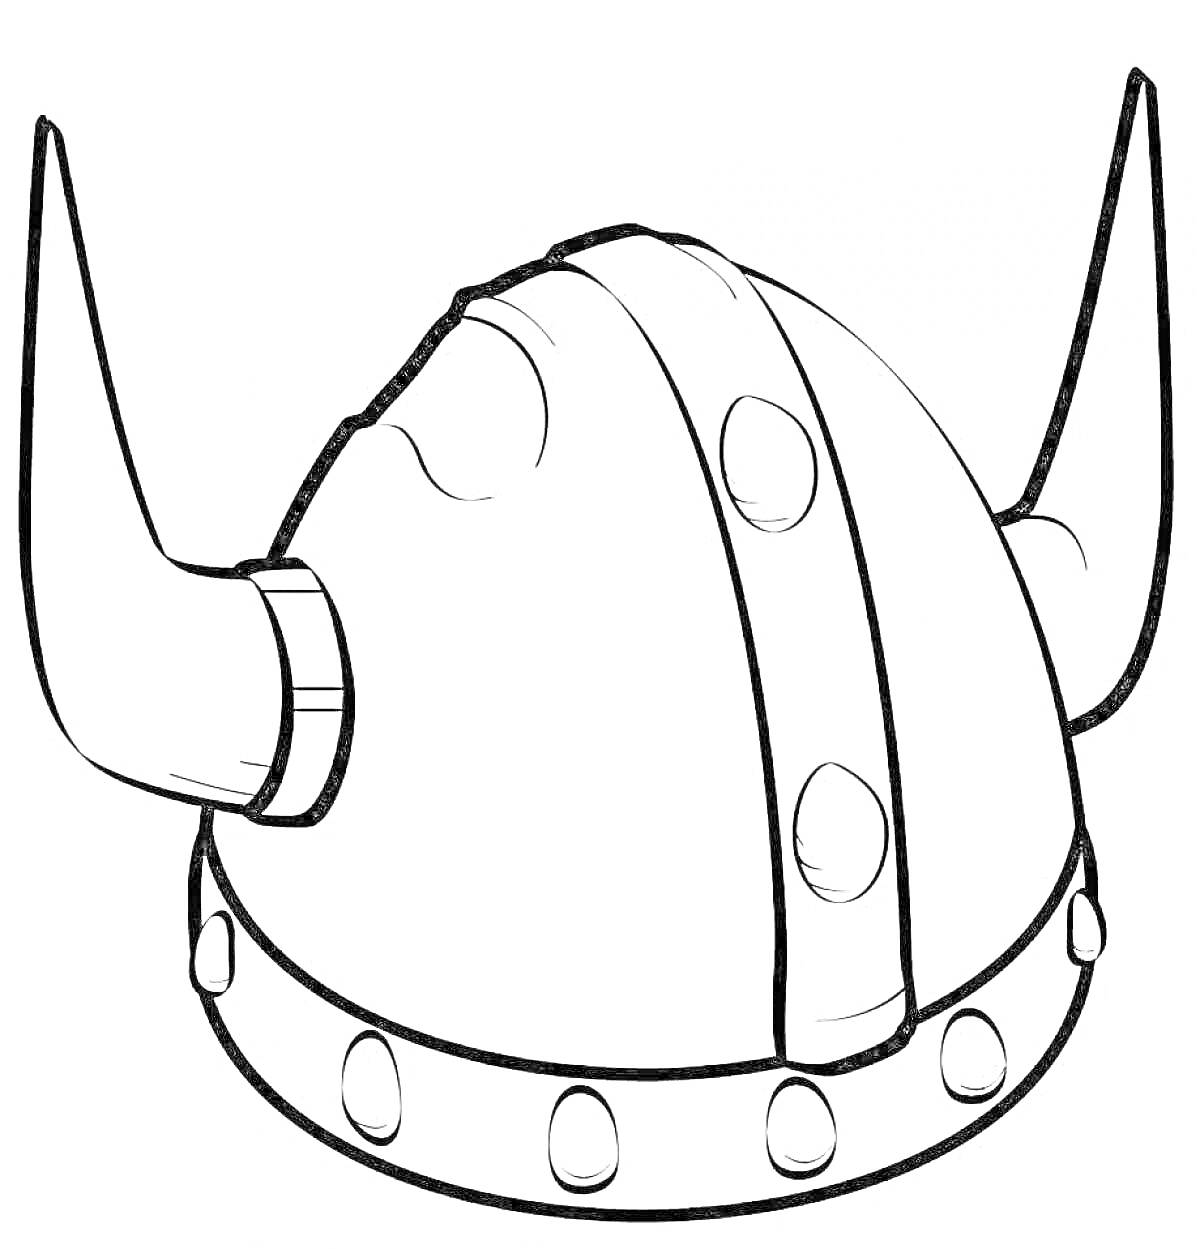 Шлем викинга с рогами, заклепками и декоративной полосой